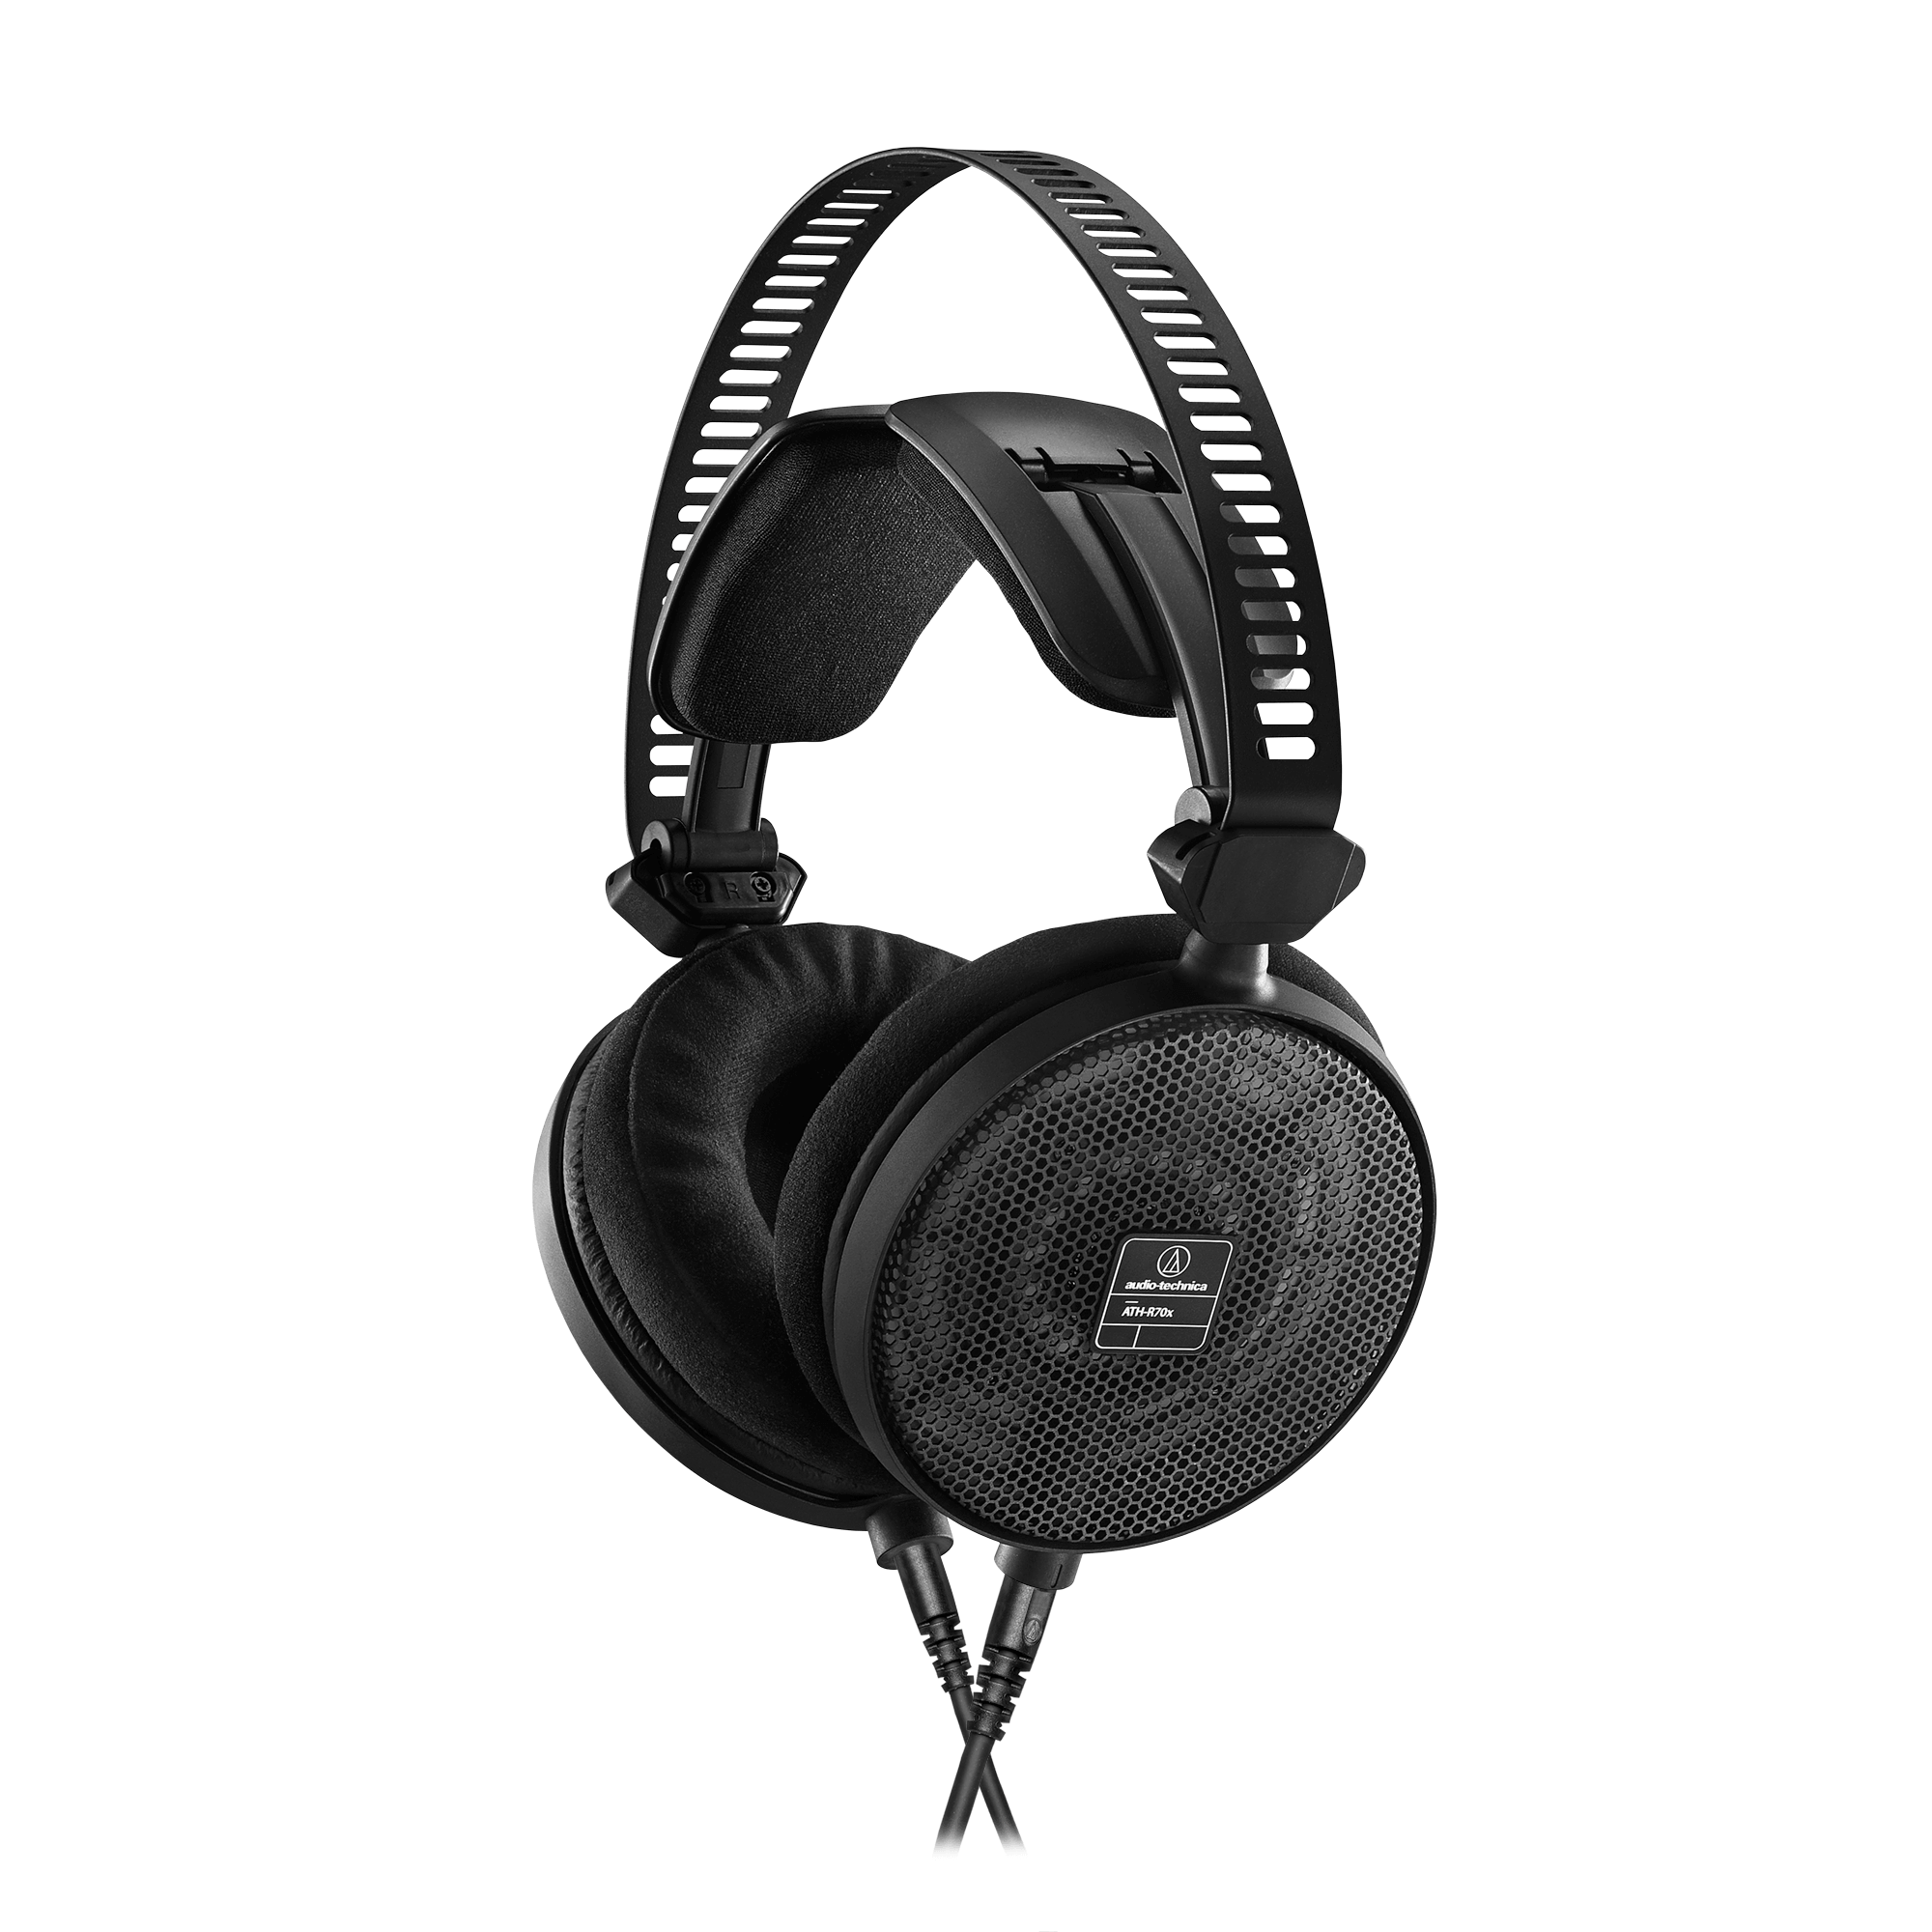 Audio-Technica ATH-R70x